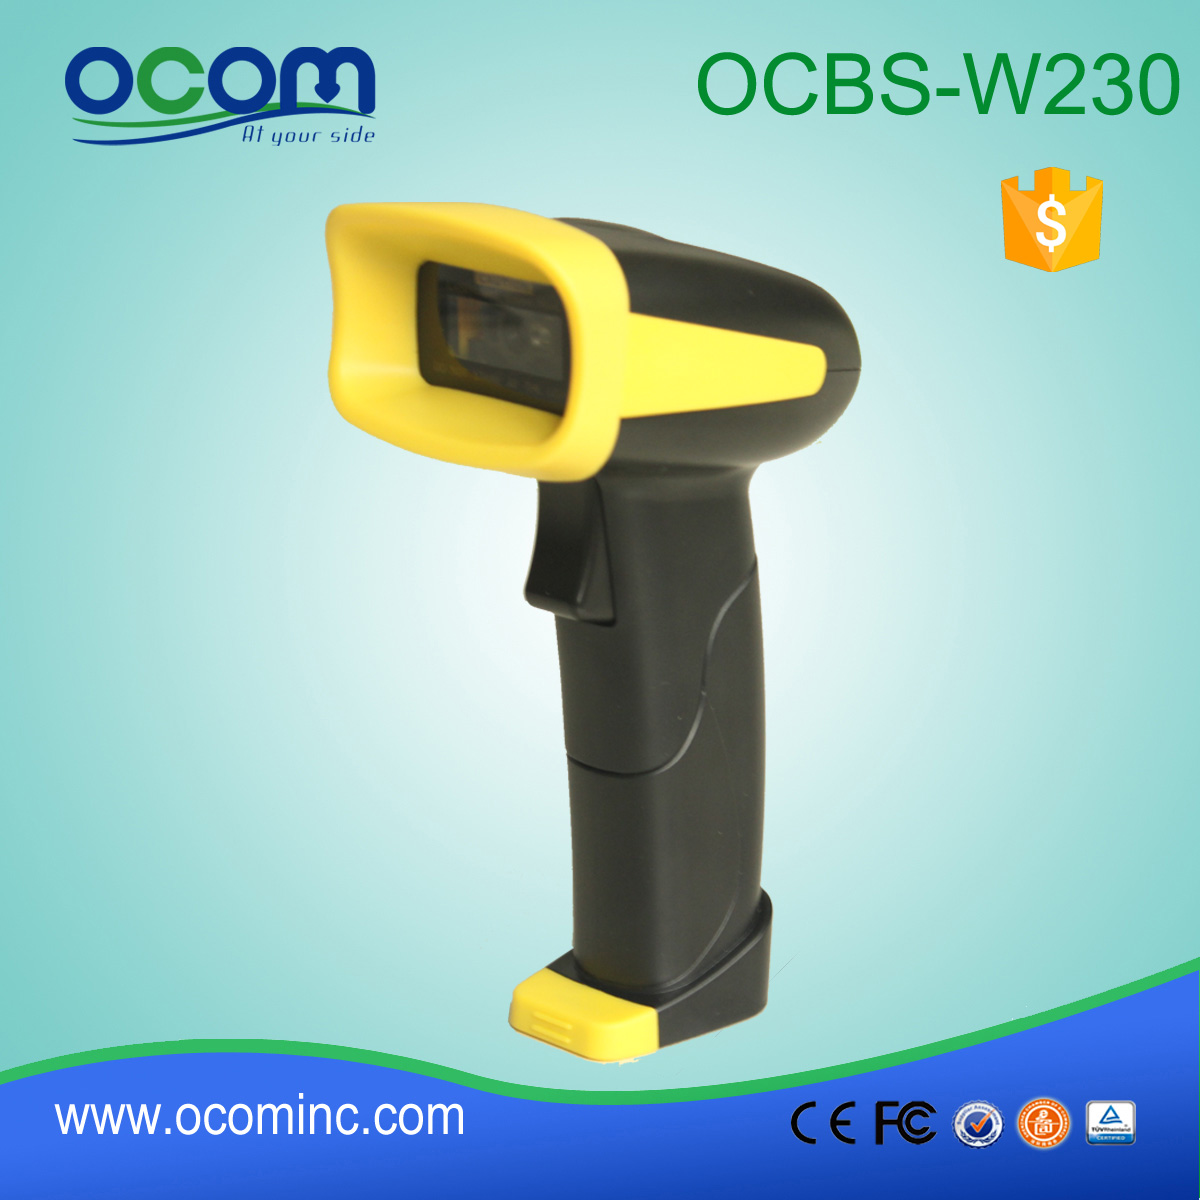 OCBs-W230: 2D portatile di codici a barre senza fili Bluetooth ad alta velocità